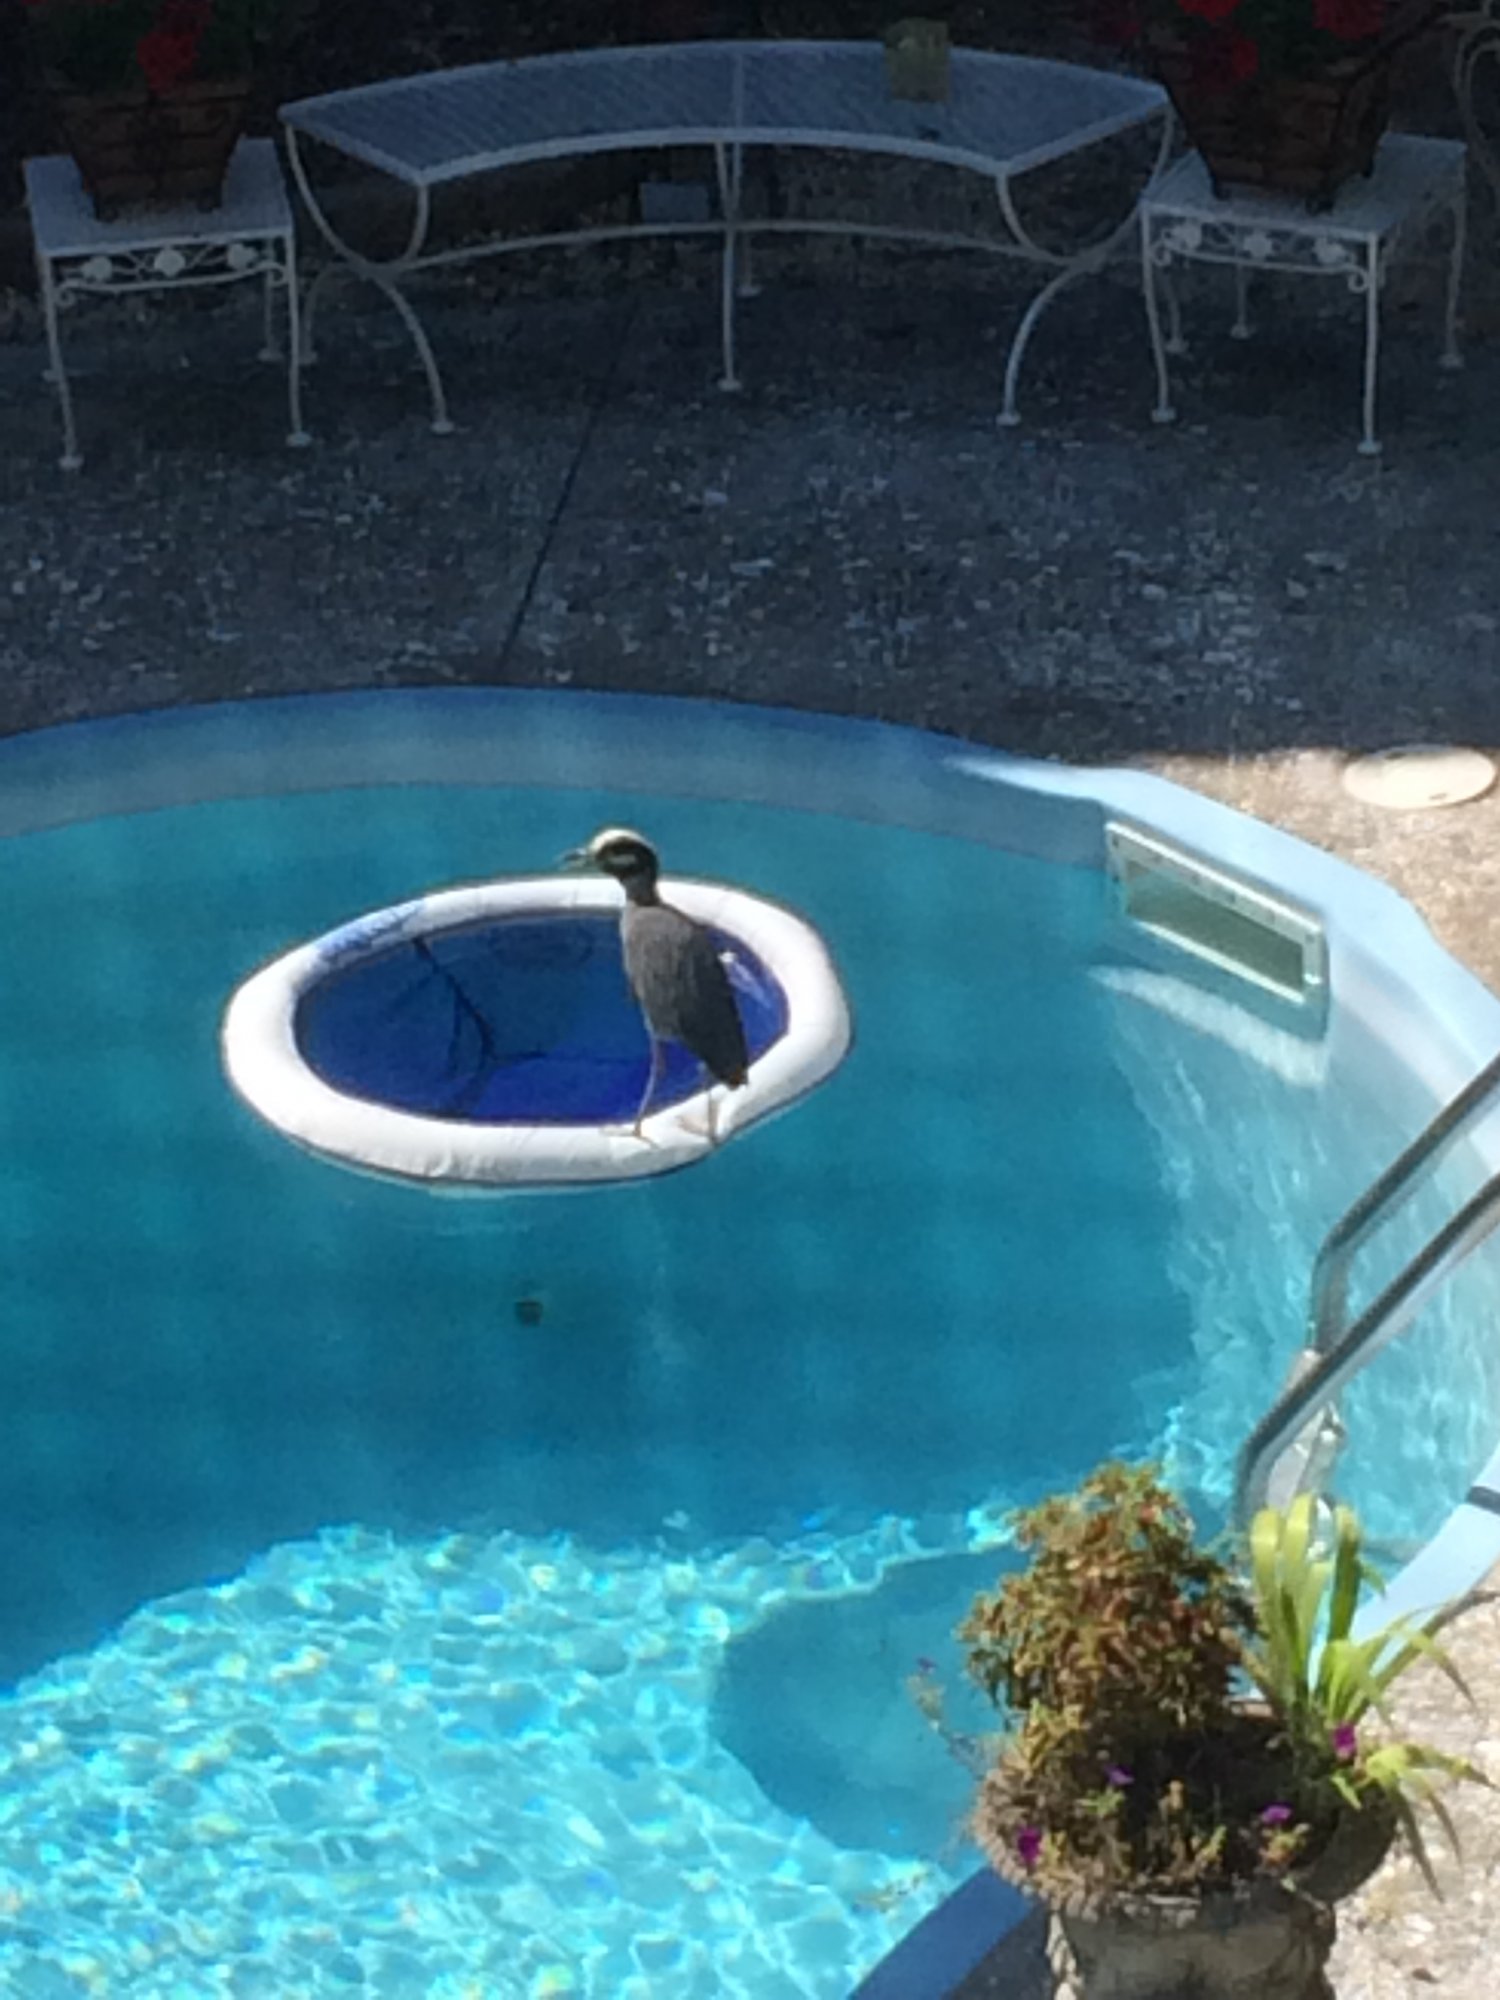 Heron in pool.JPG